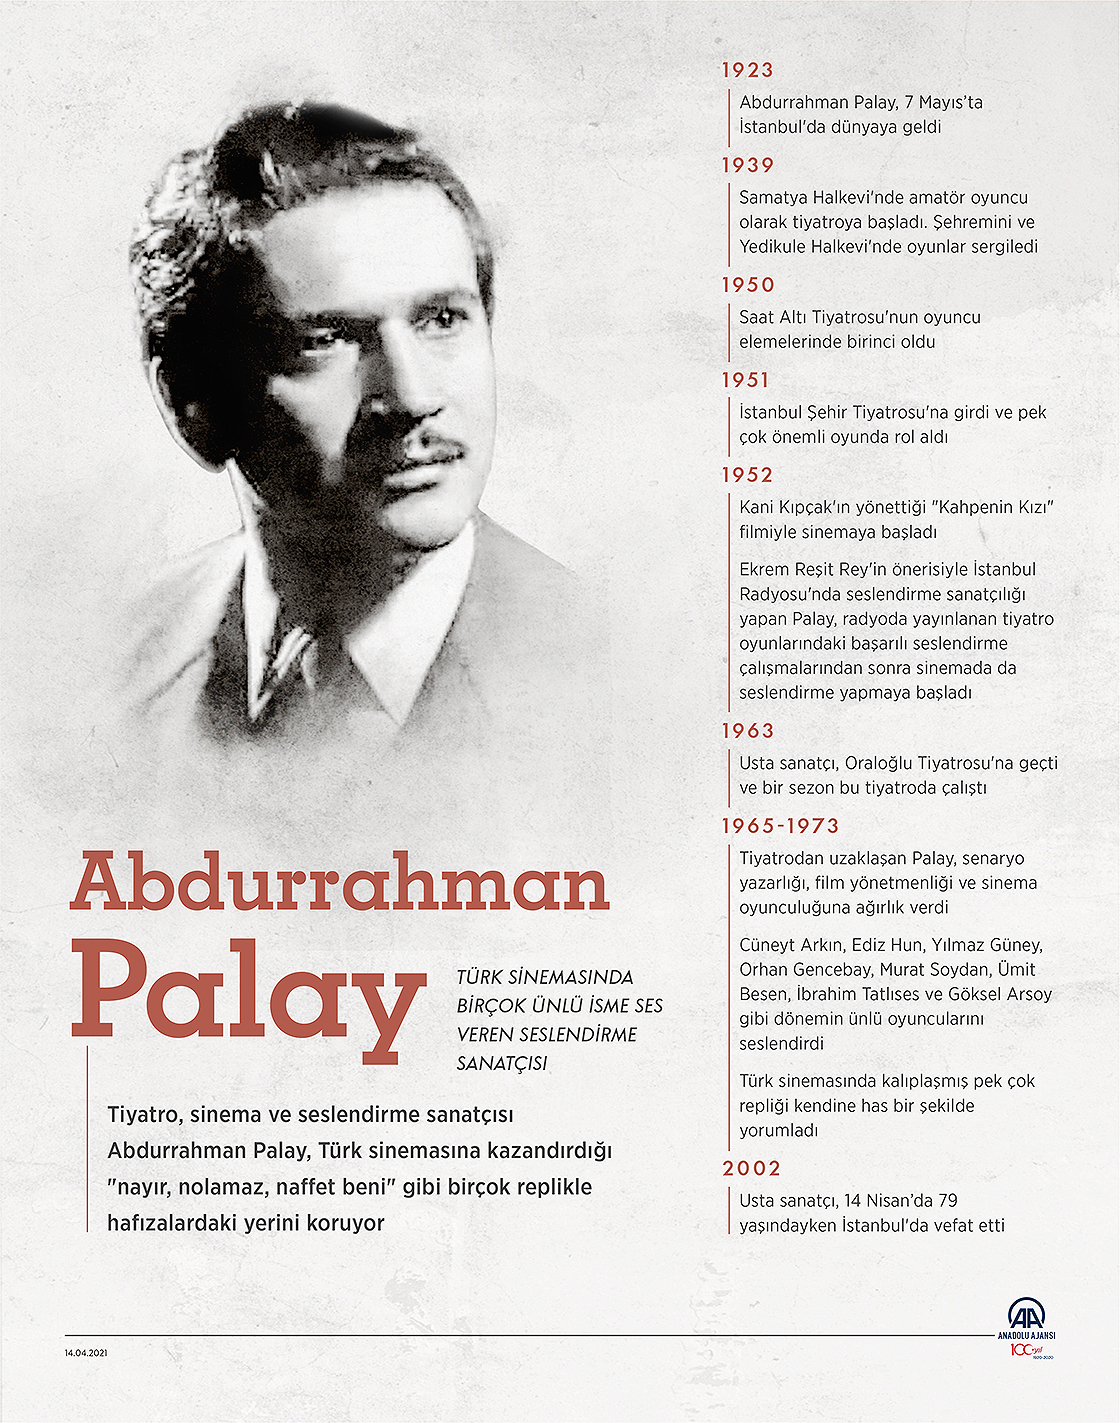 Türk sinemasında birçok ünlü isme ses veren seslendirme sanatçısı: Abdurrahman Palay